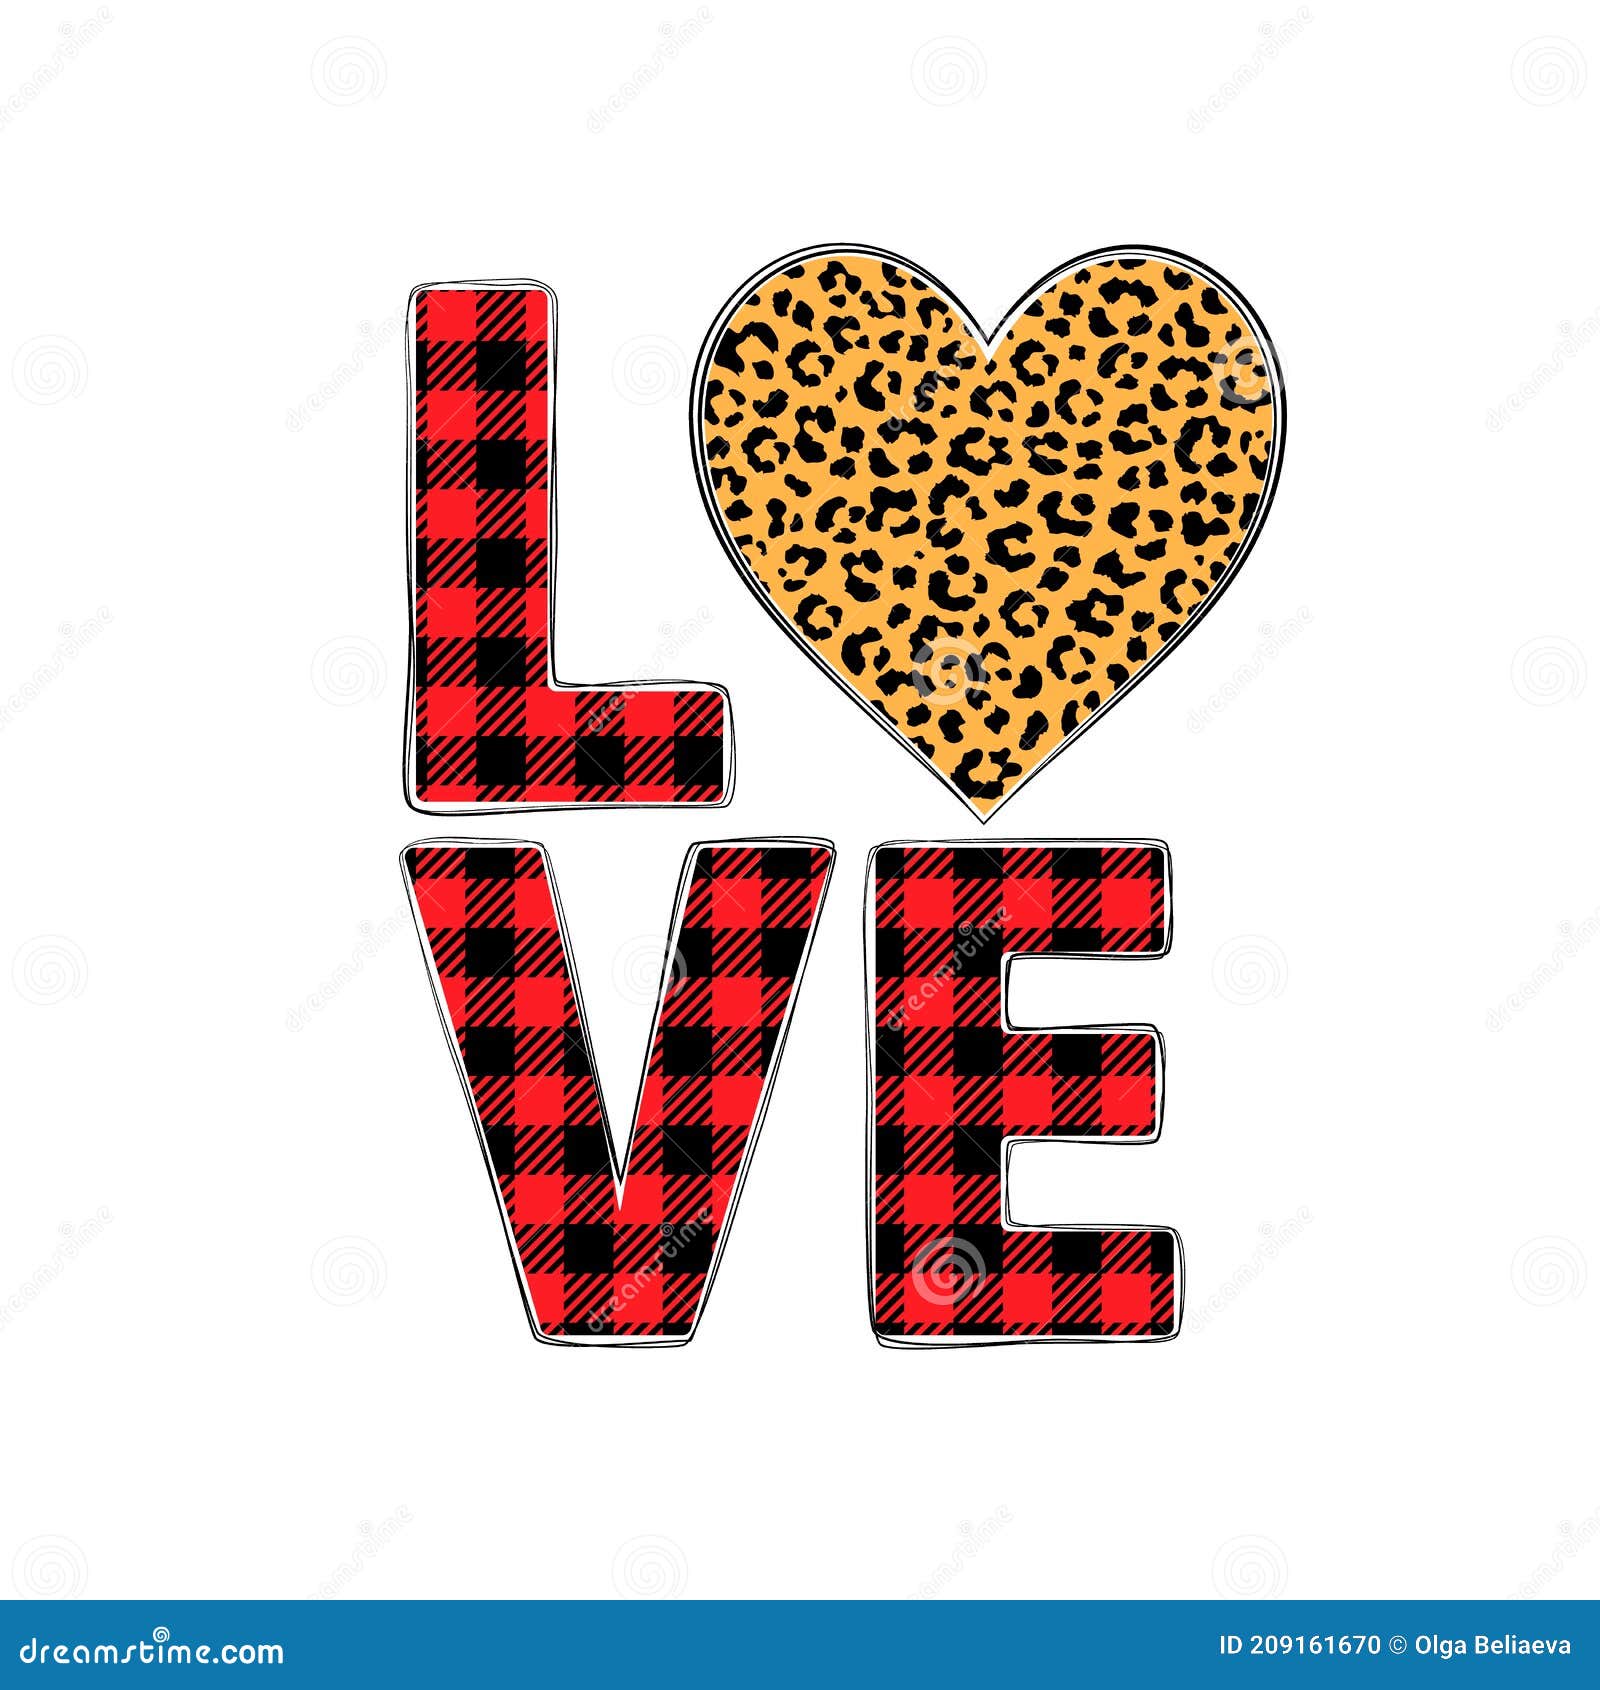 Leopard Heart Illustrations & Vectors